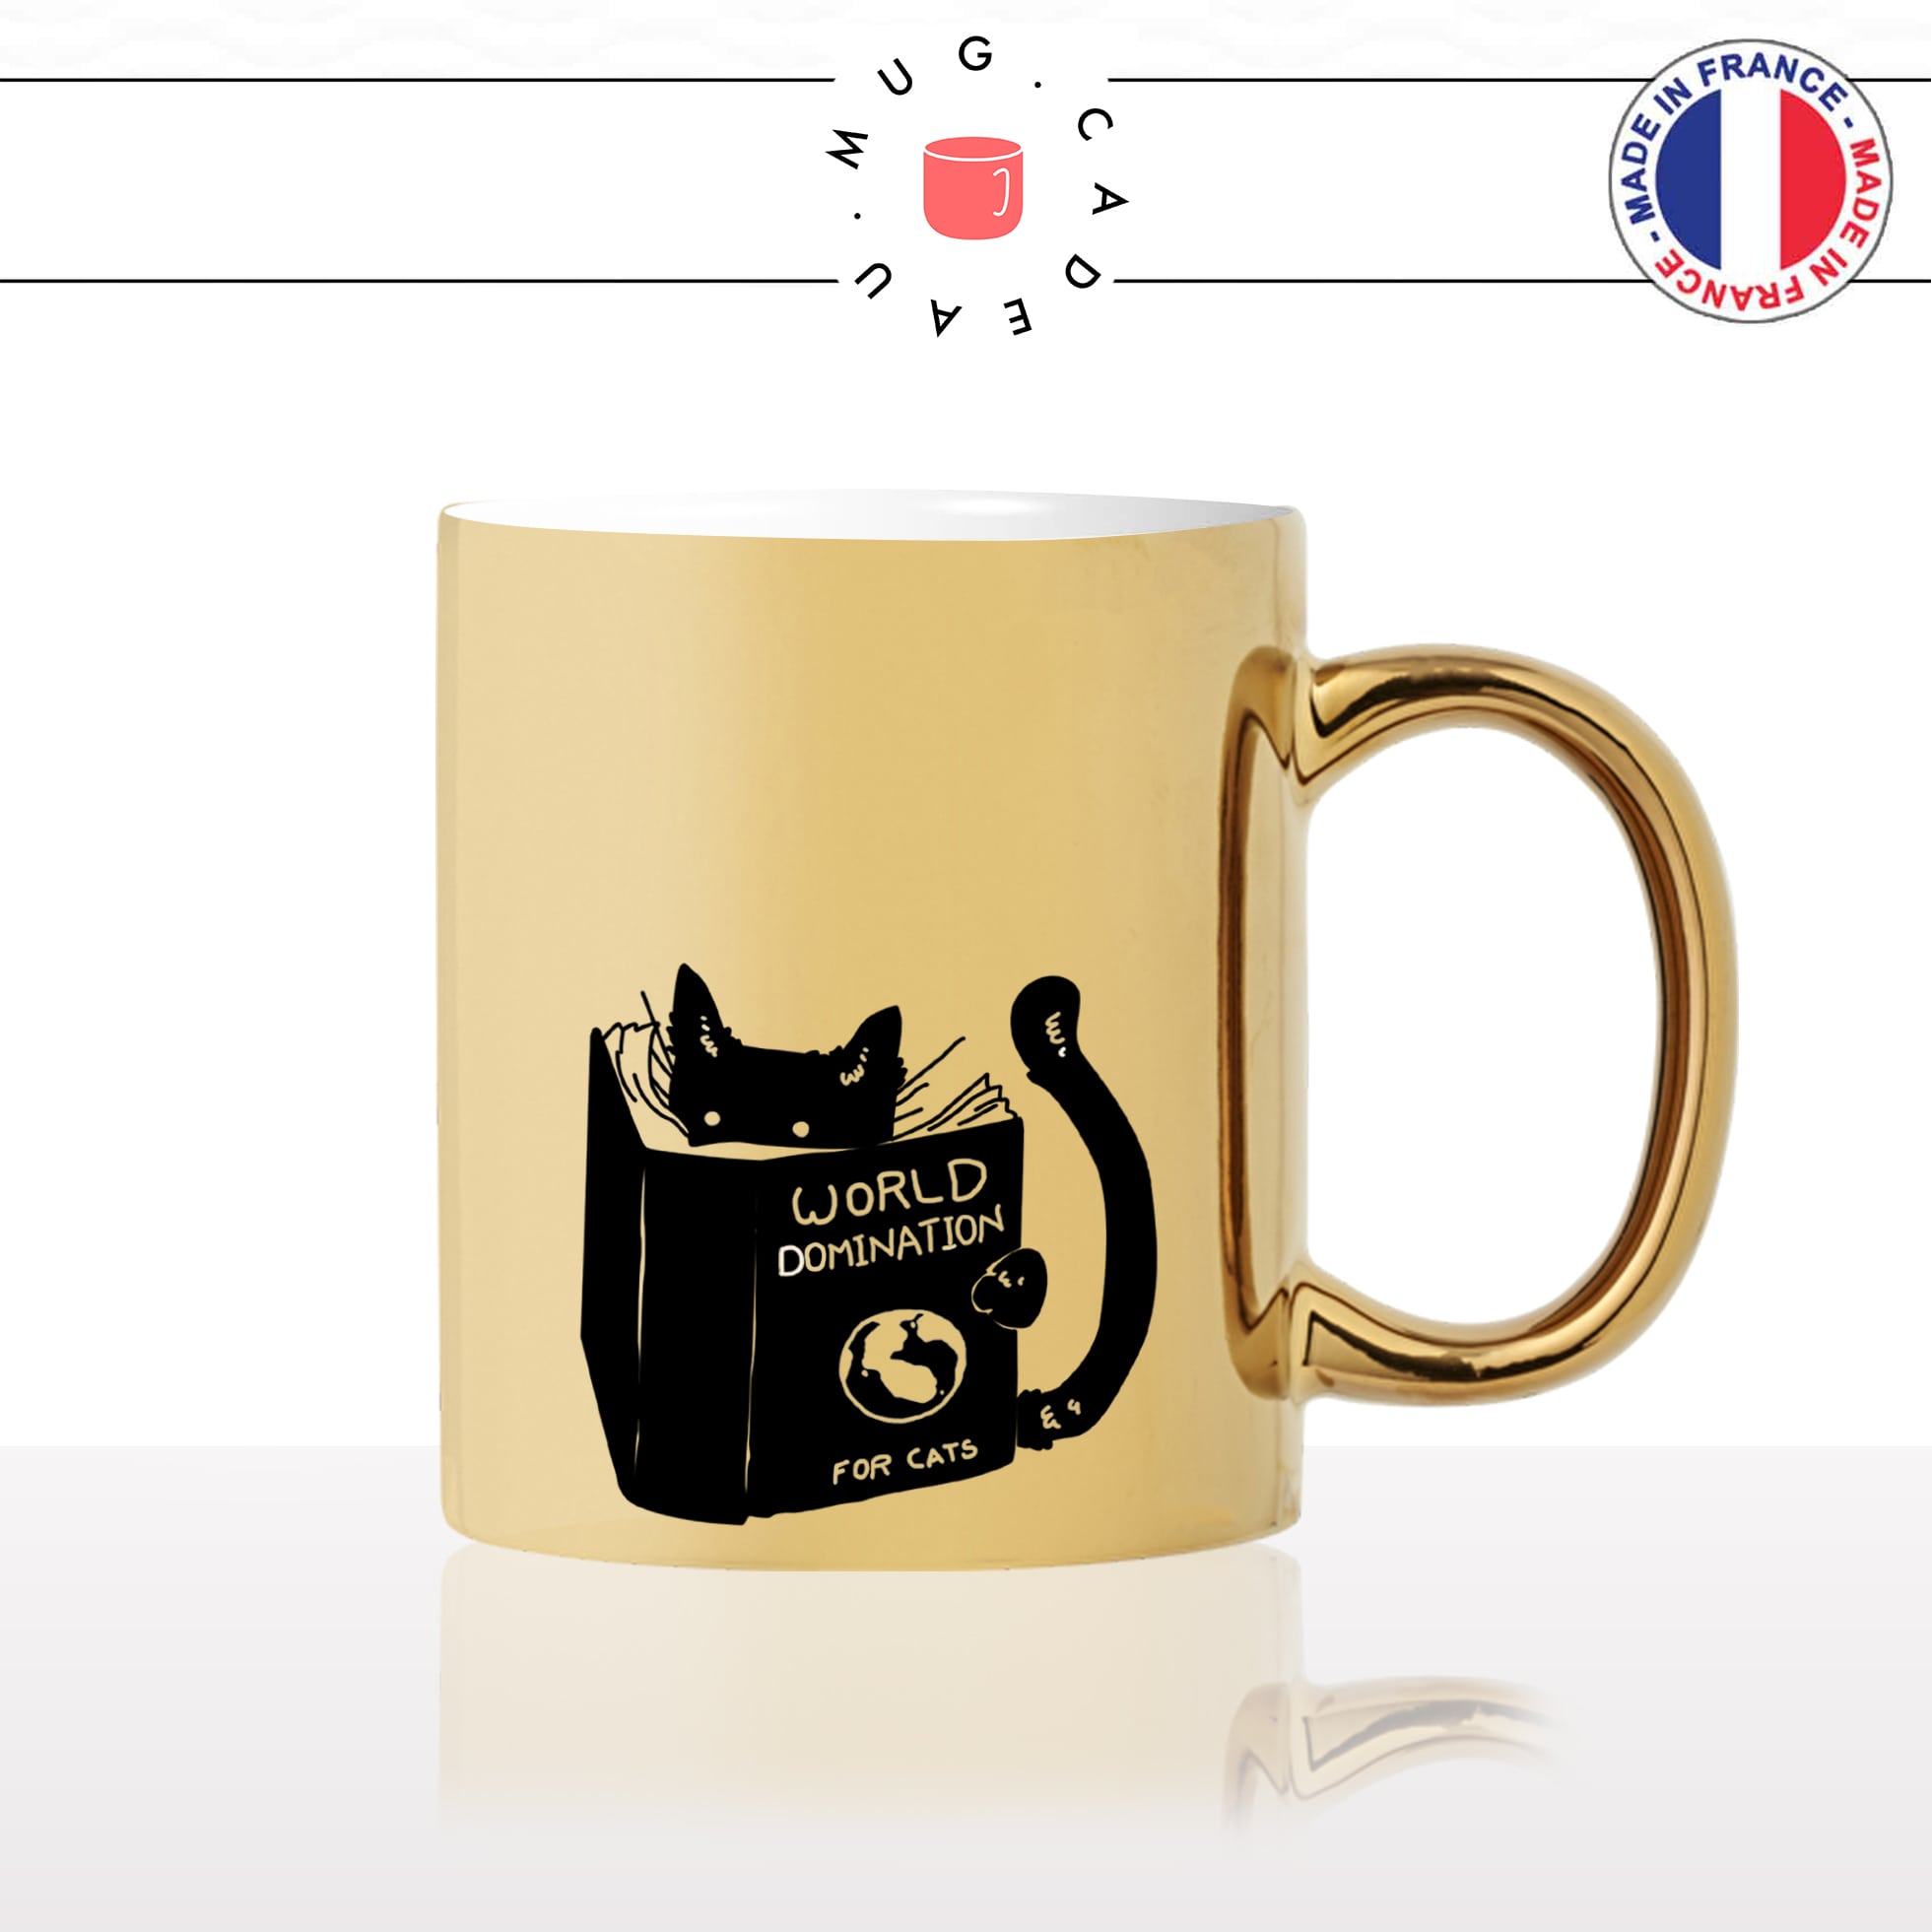 mug-tasse-or-doré-dominer-le-monde-world-humour-chat-mignon-animal-chaton-noir-fun-café-thé-idée-cadeau-original-personnalisé-gold2-min